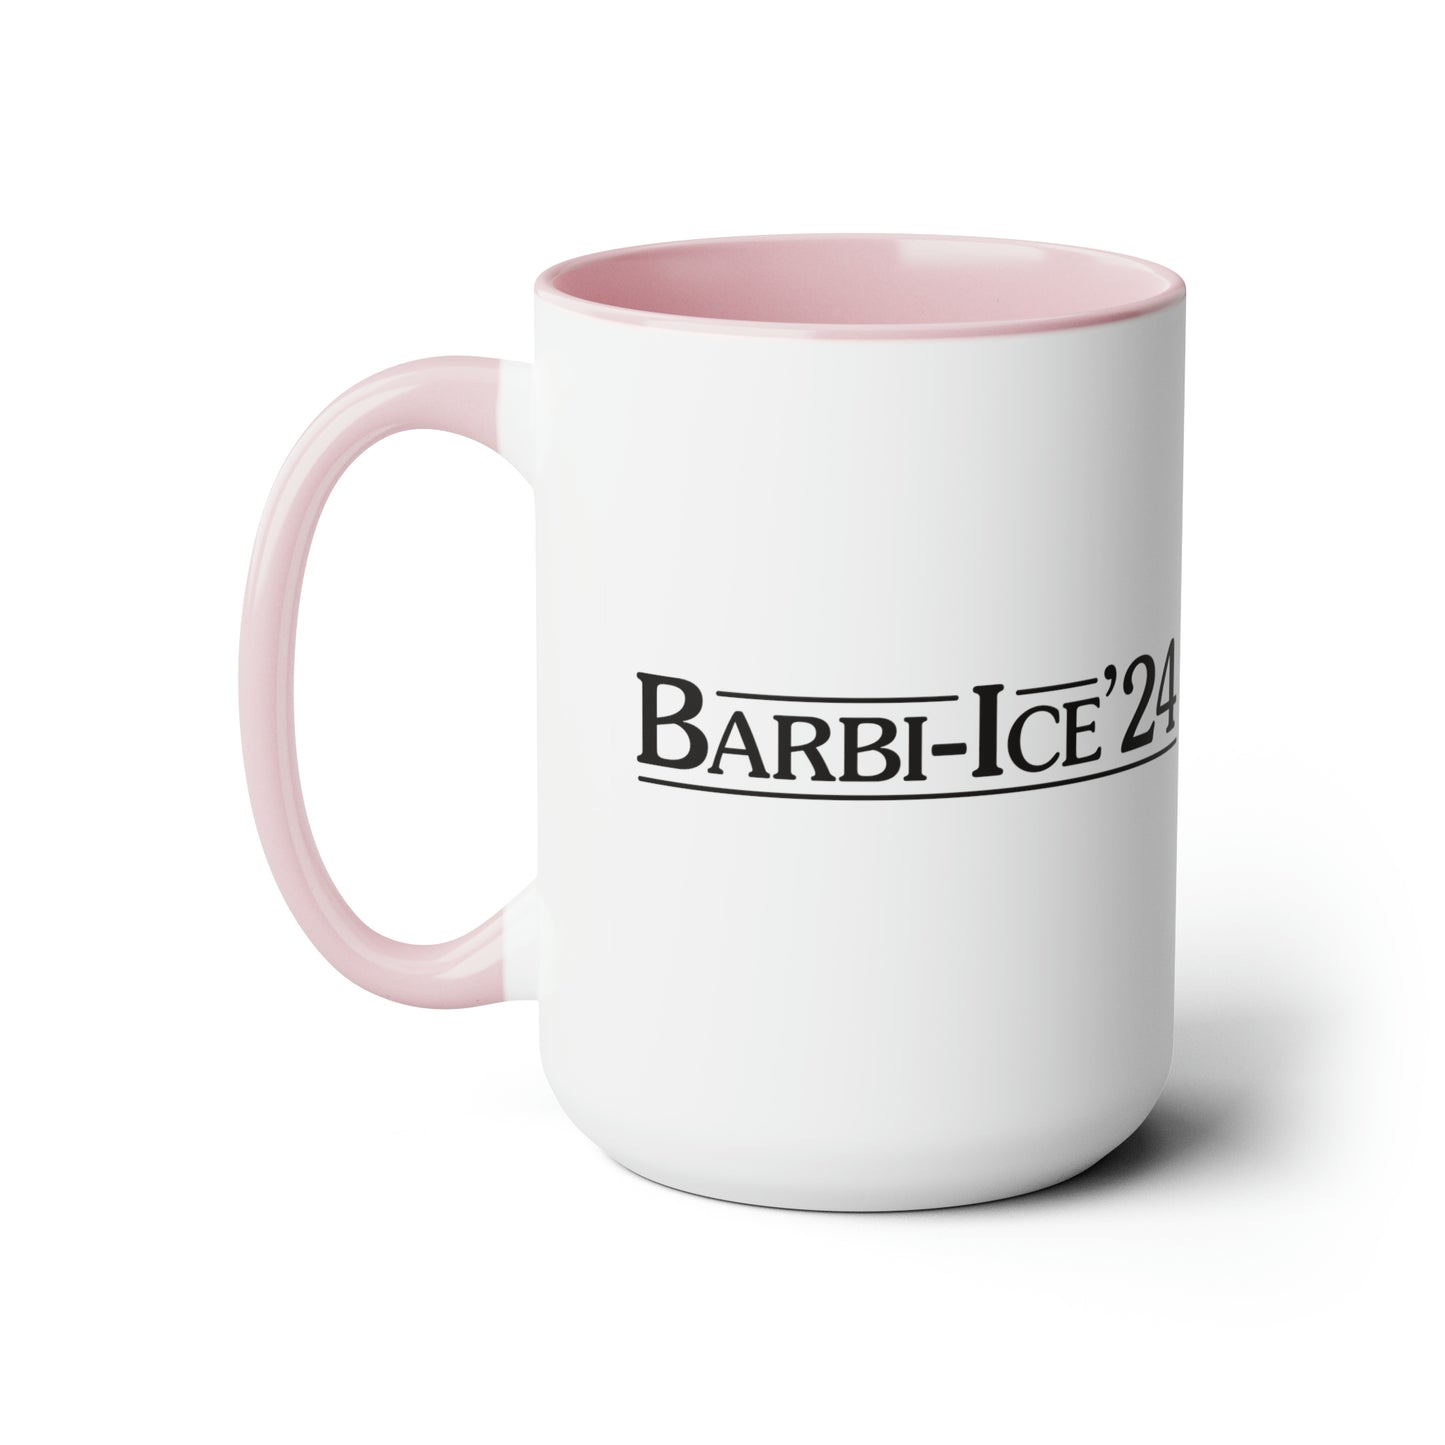 Barbie-Ice '24 Mug